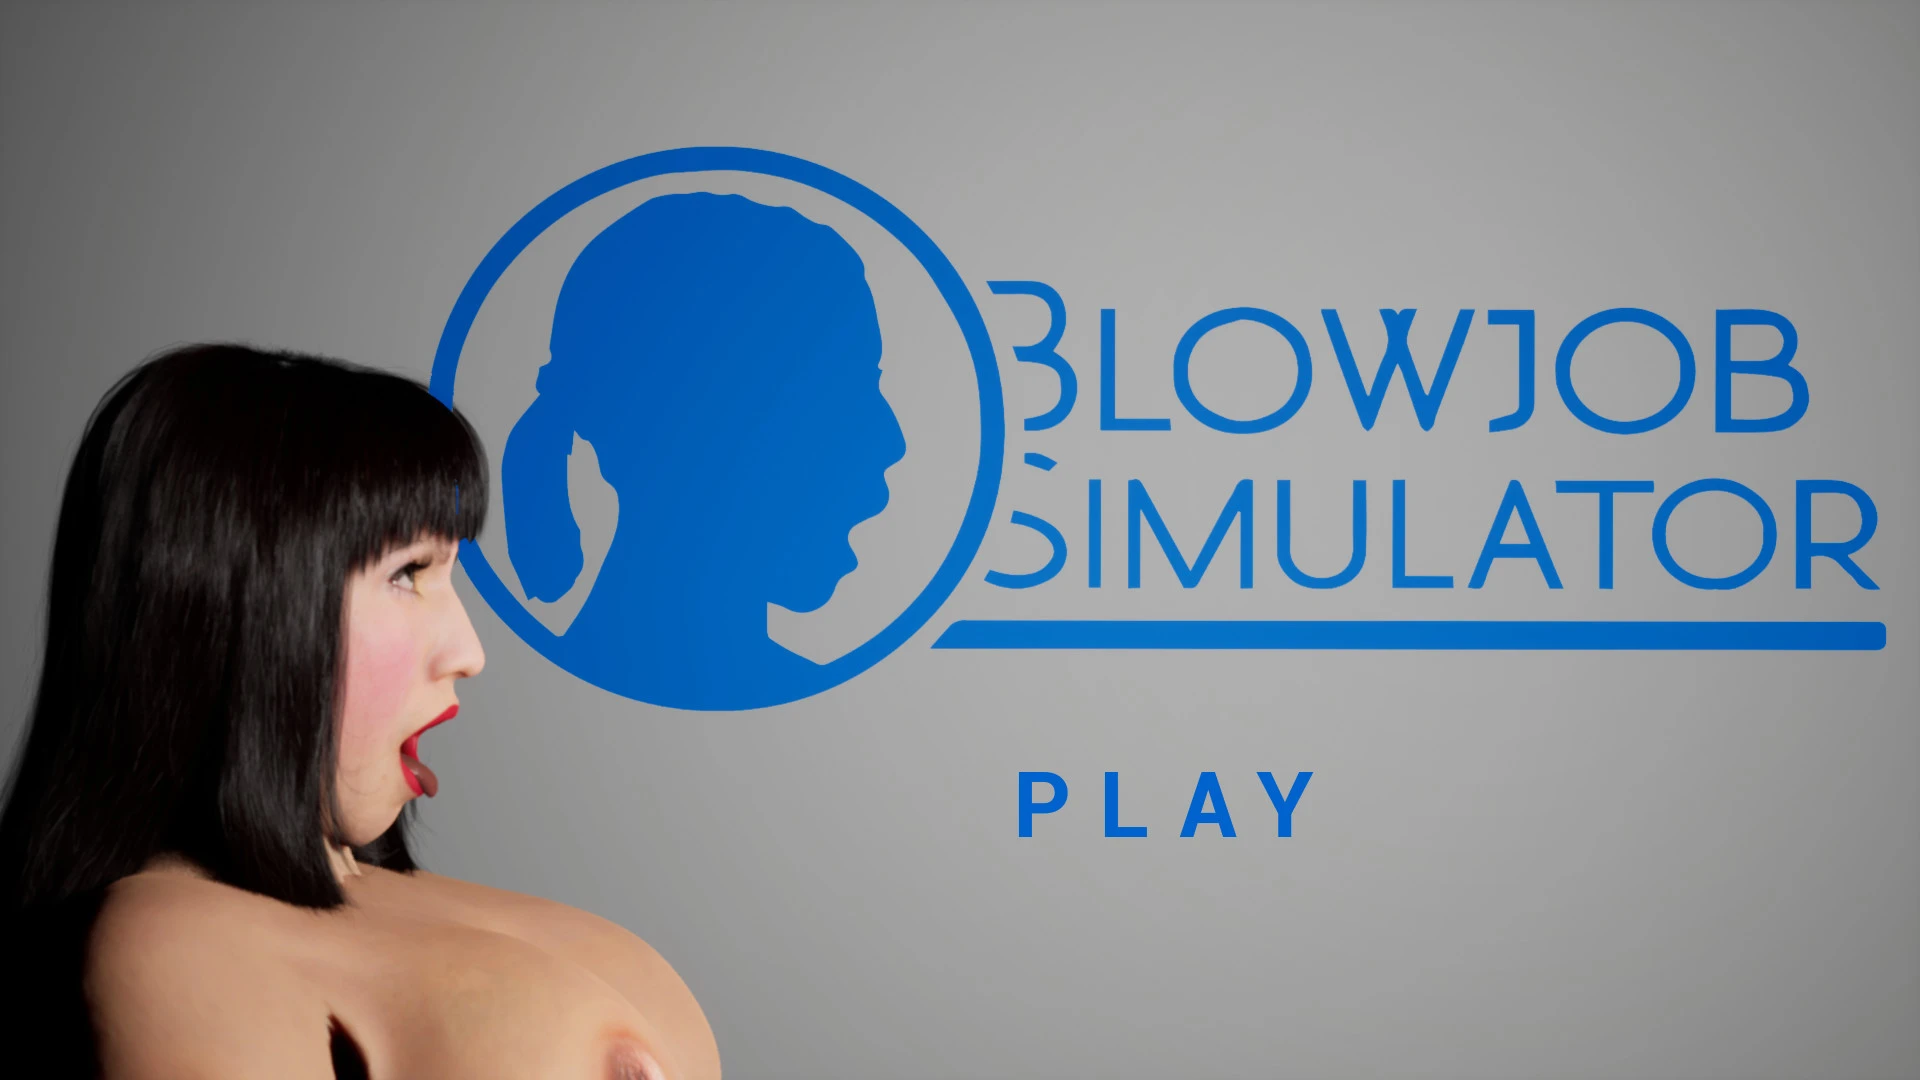 Blowjob Simulator main image